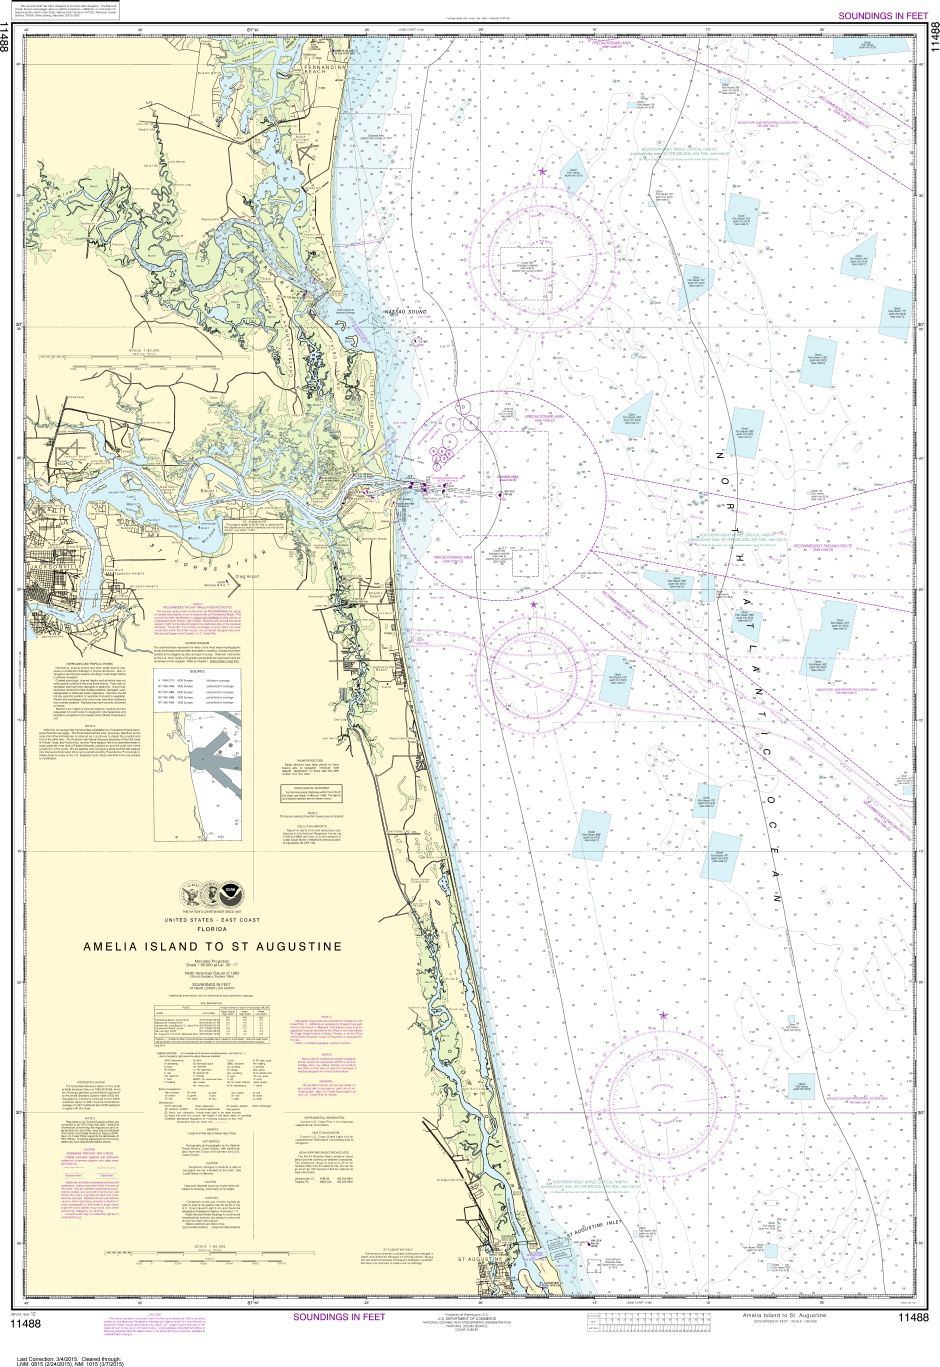 NOAA Print-on-Demand Charts US Waters-Amelia Island to St. Augustine-11488